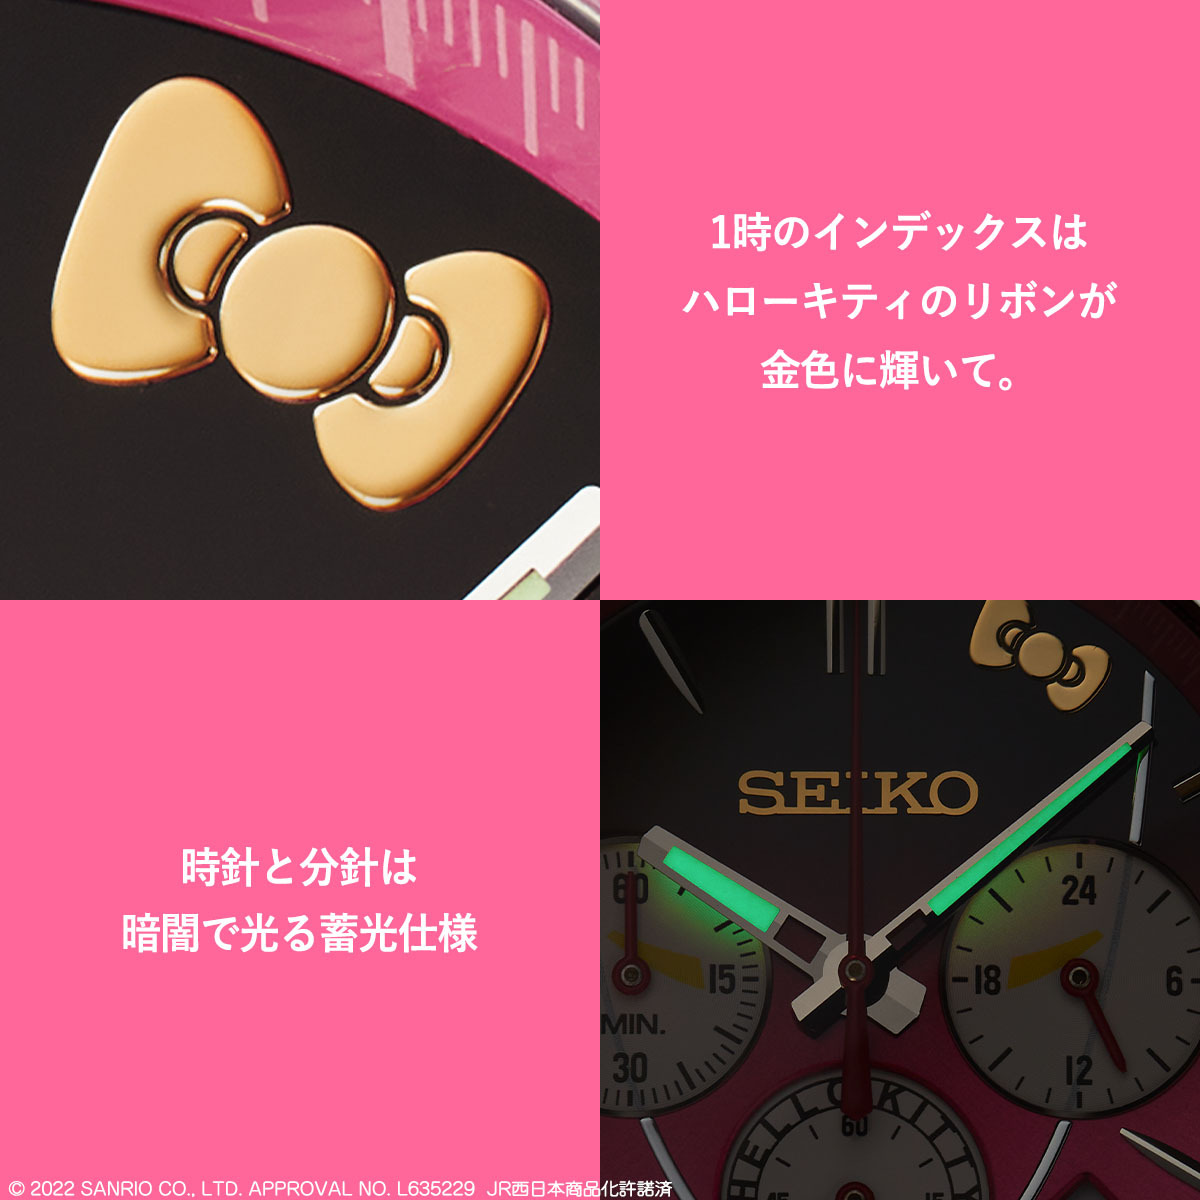 、【未開封品】SEIKO 500 タイプ EVA ウォッチ　500系新幹線25周